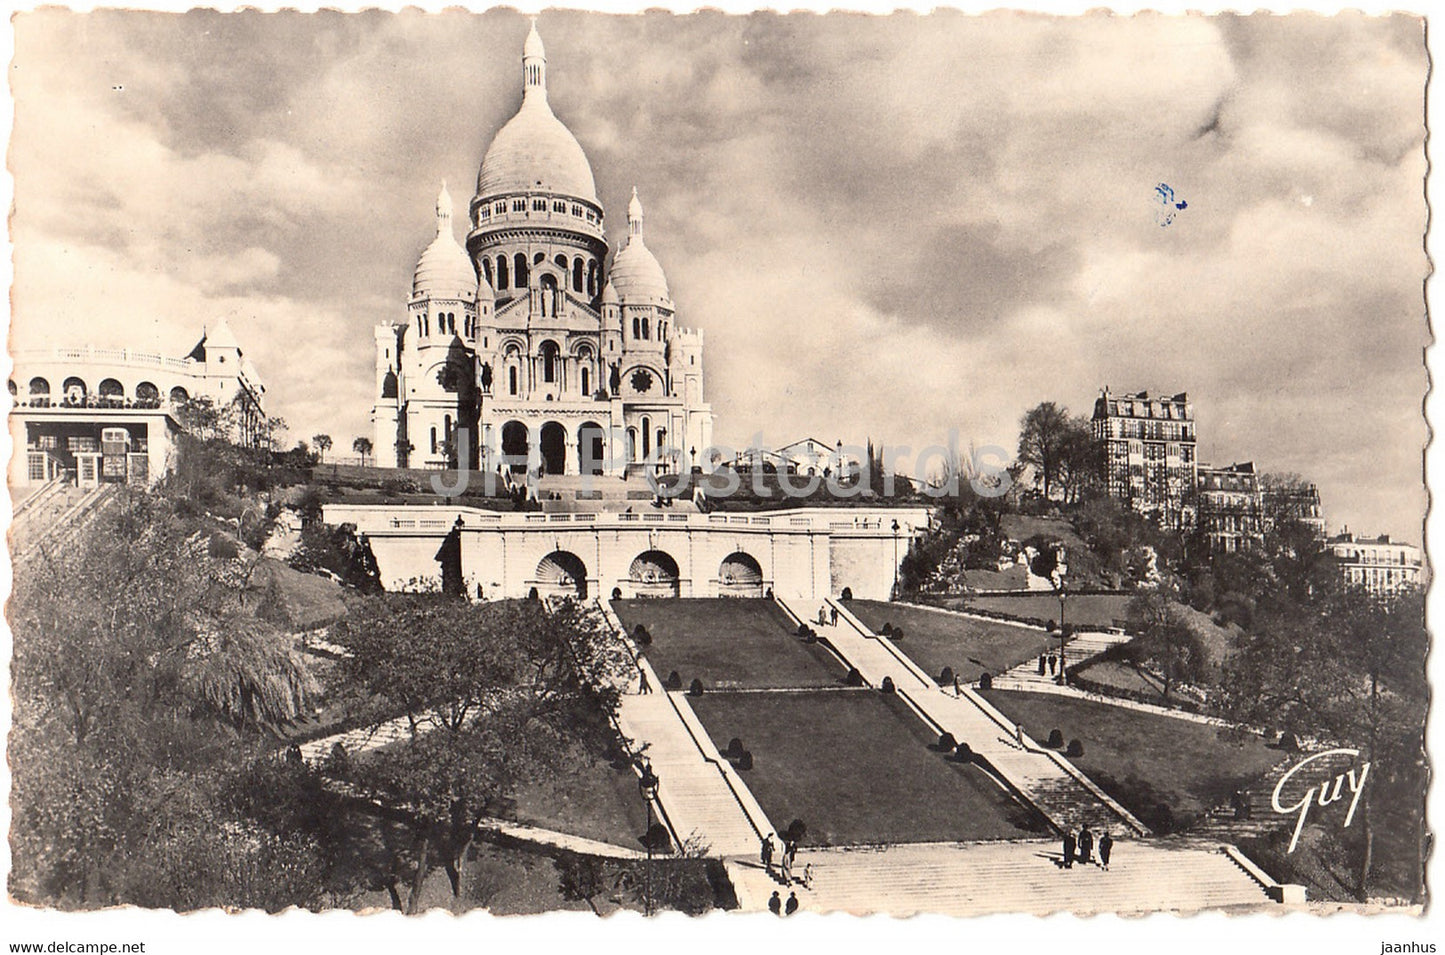 Paris - Basilique du Sacre Coeur de Montmartre - cathedral - 318 - old postcard - France - used - JH Postcards